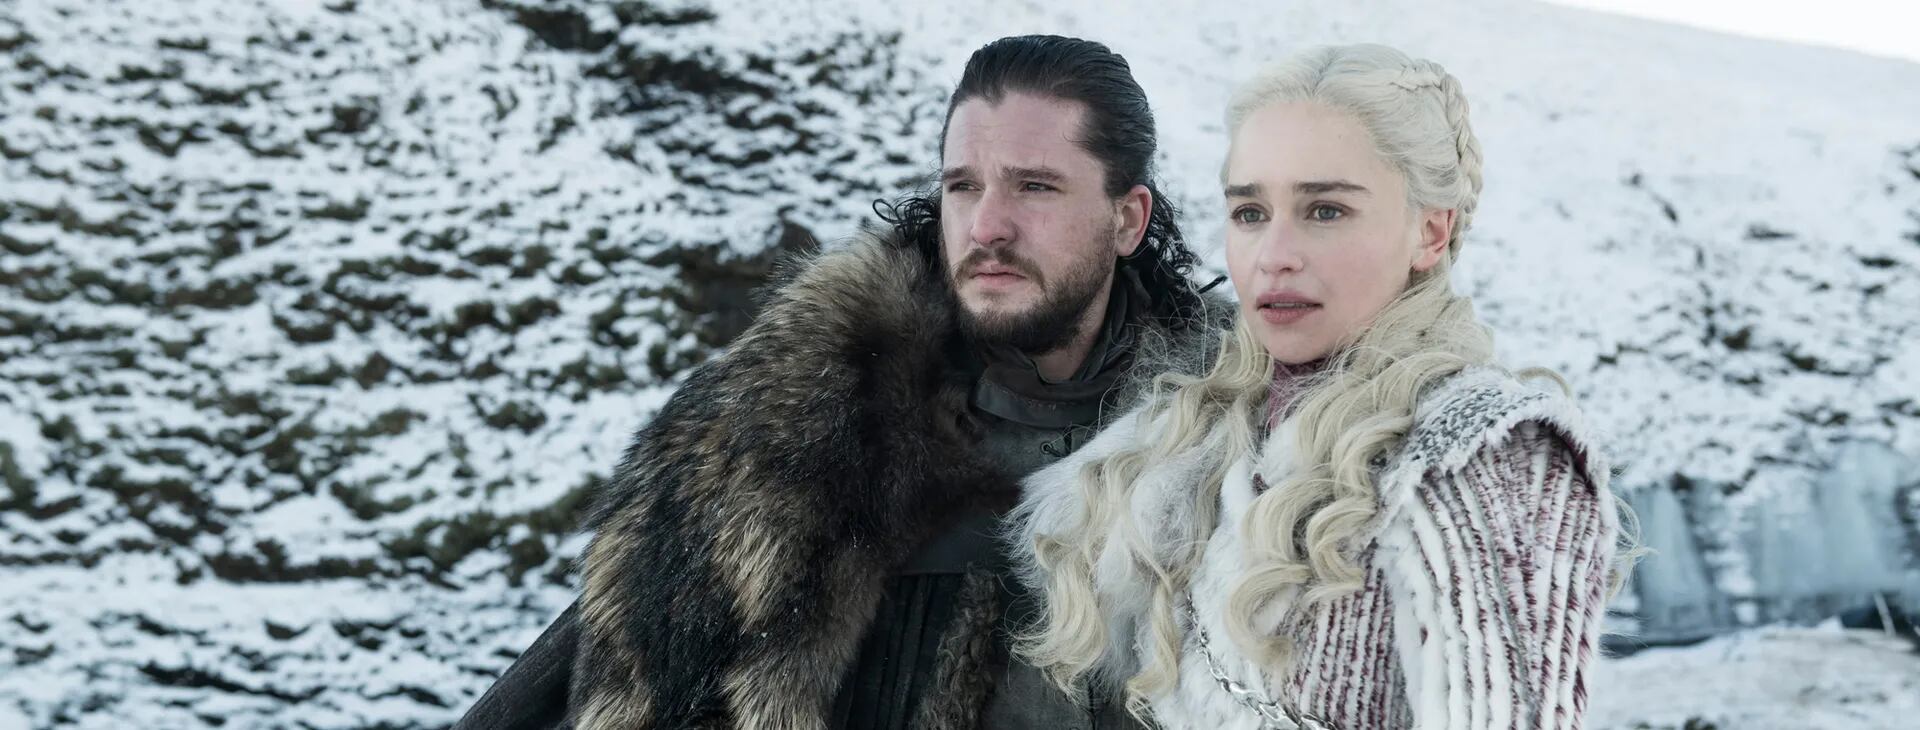 Jon Snow y su reina, Daenerys Targaryen como se los verá el 14 de abril en el primer episodio de la útima temporada de la serie más vista y pirateada de los últimos años.